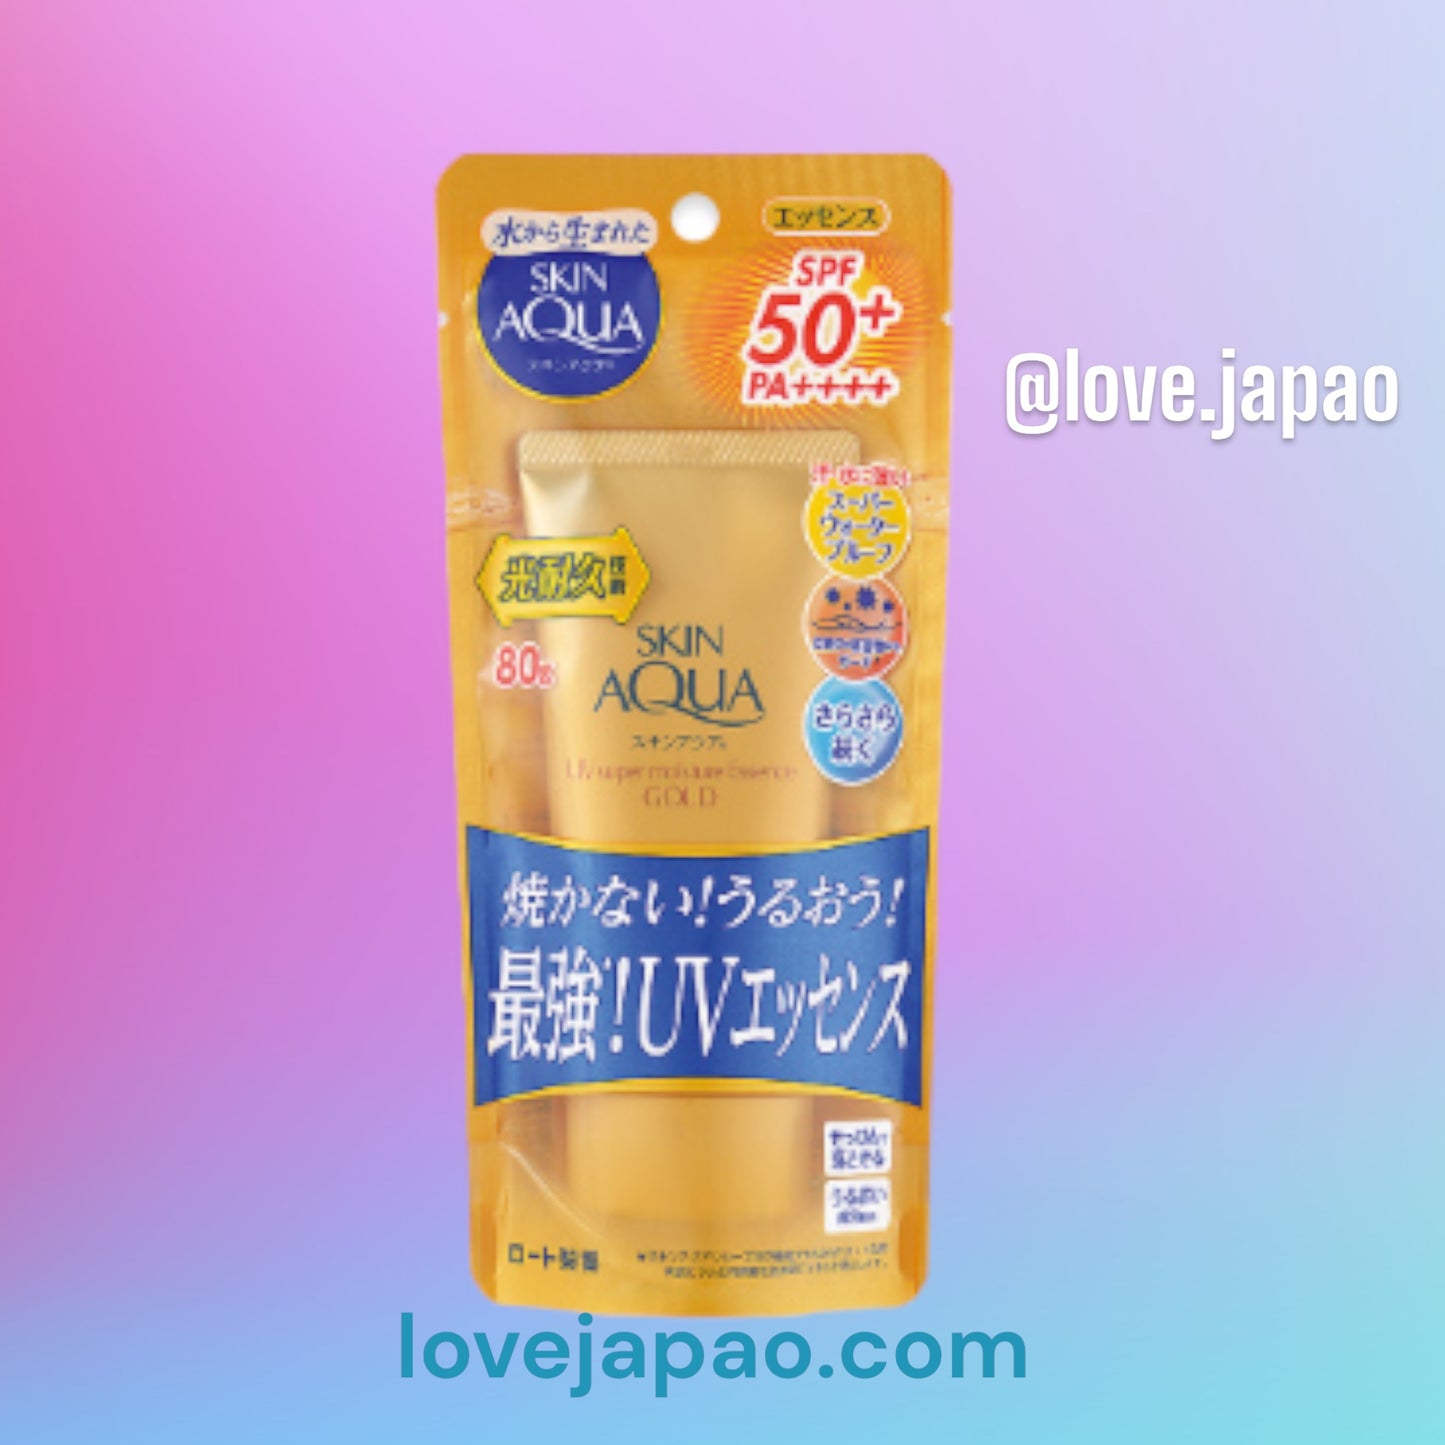 Skin Aqua Super Moisture Essence Gold Rohto protetor solar 80g SPF 50